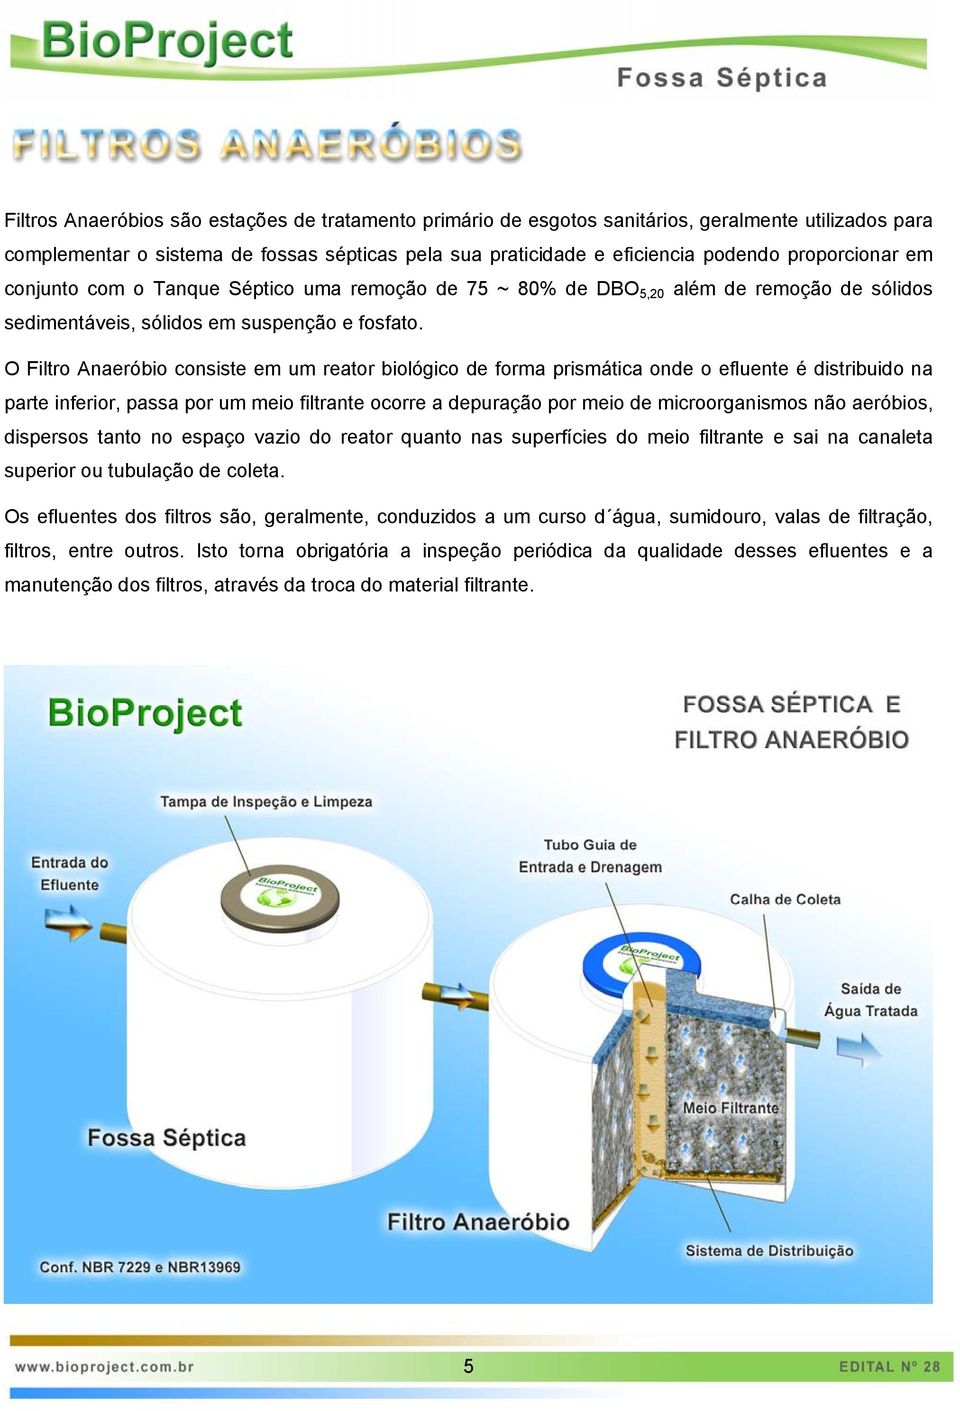 O Filtro Anaeróbio consiste em um reator biológico de forma prismática onde o efluente é distribuido na parte inferior, passa por um meio filtrante ocorre a depuração por meio de microorganismos não